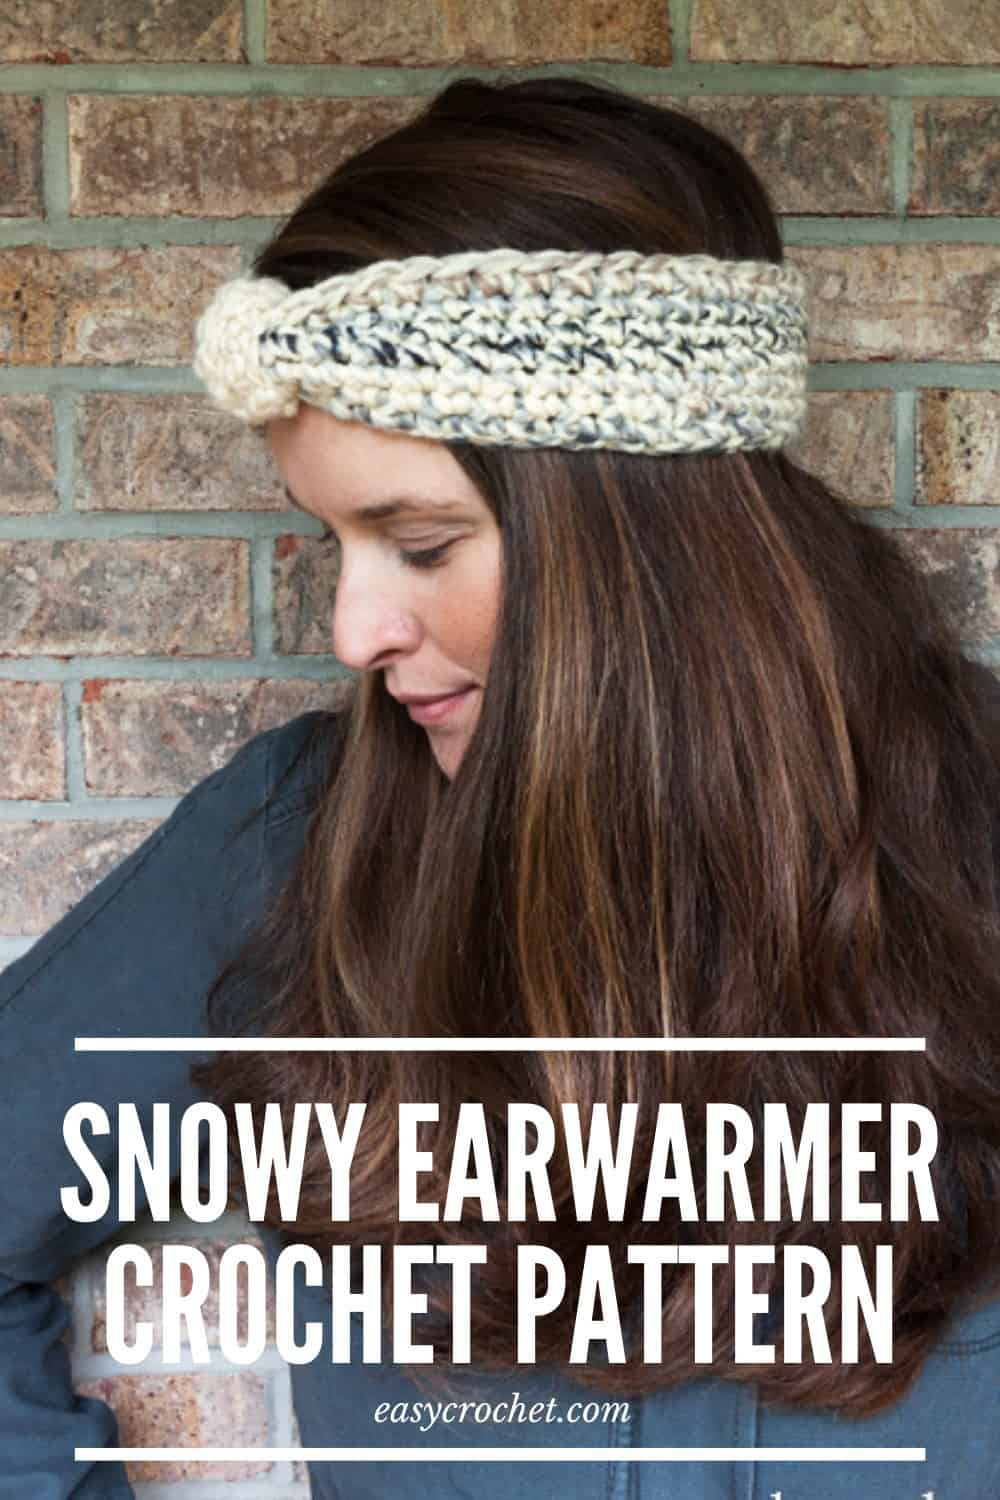 Free Crochet Ear Warmer Pattern - The Snowy Ear Warmer via @easycrochetcom